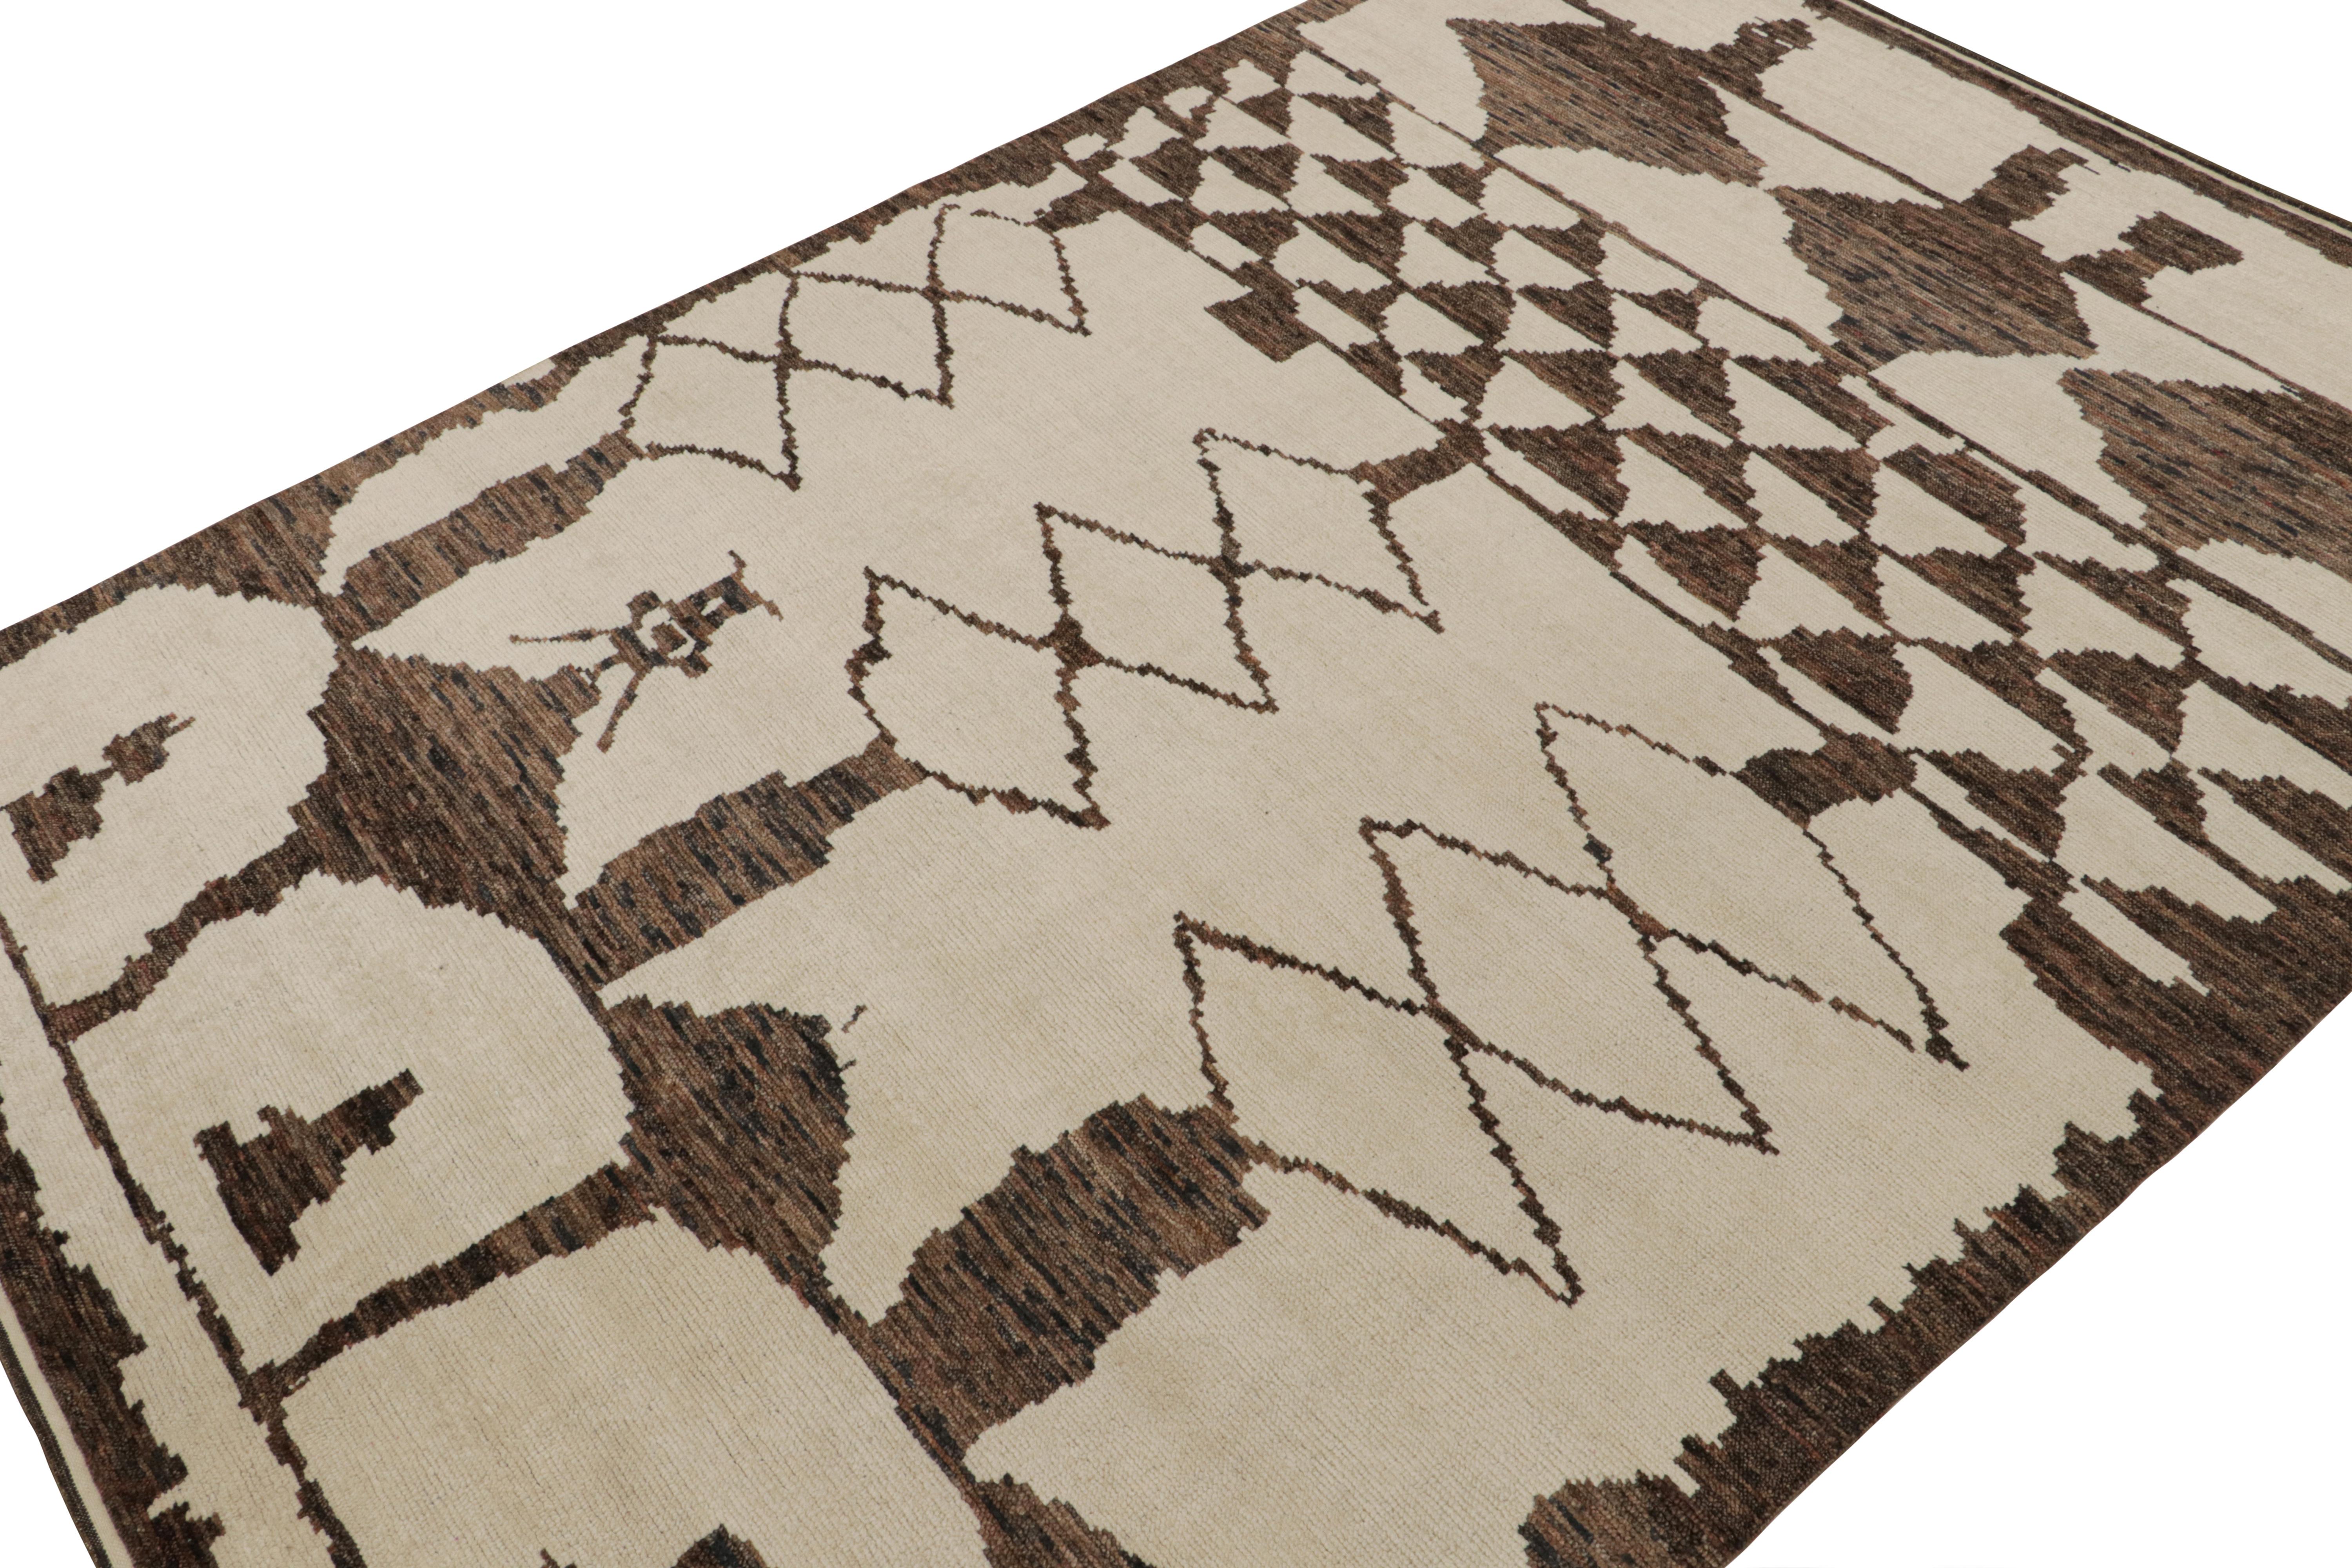 Noué à la main en laine, ce tapis contemporain 10x14 est un nouvel ajout à la collection de tapis marocains de Rug & Kilim. 

Sur le Design/One

Ce tapis est de couleur crème et beige avec des losanges brun chocolat et d'autres motifs géométriques